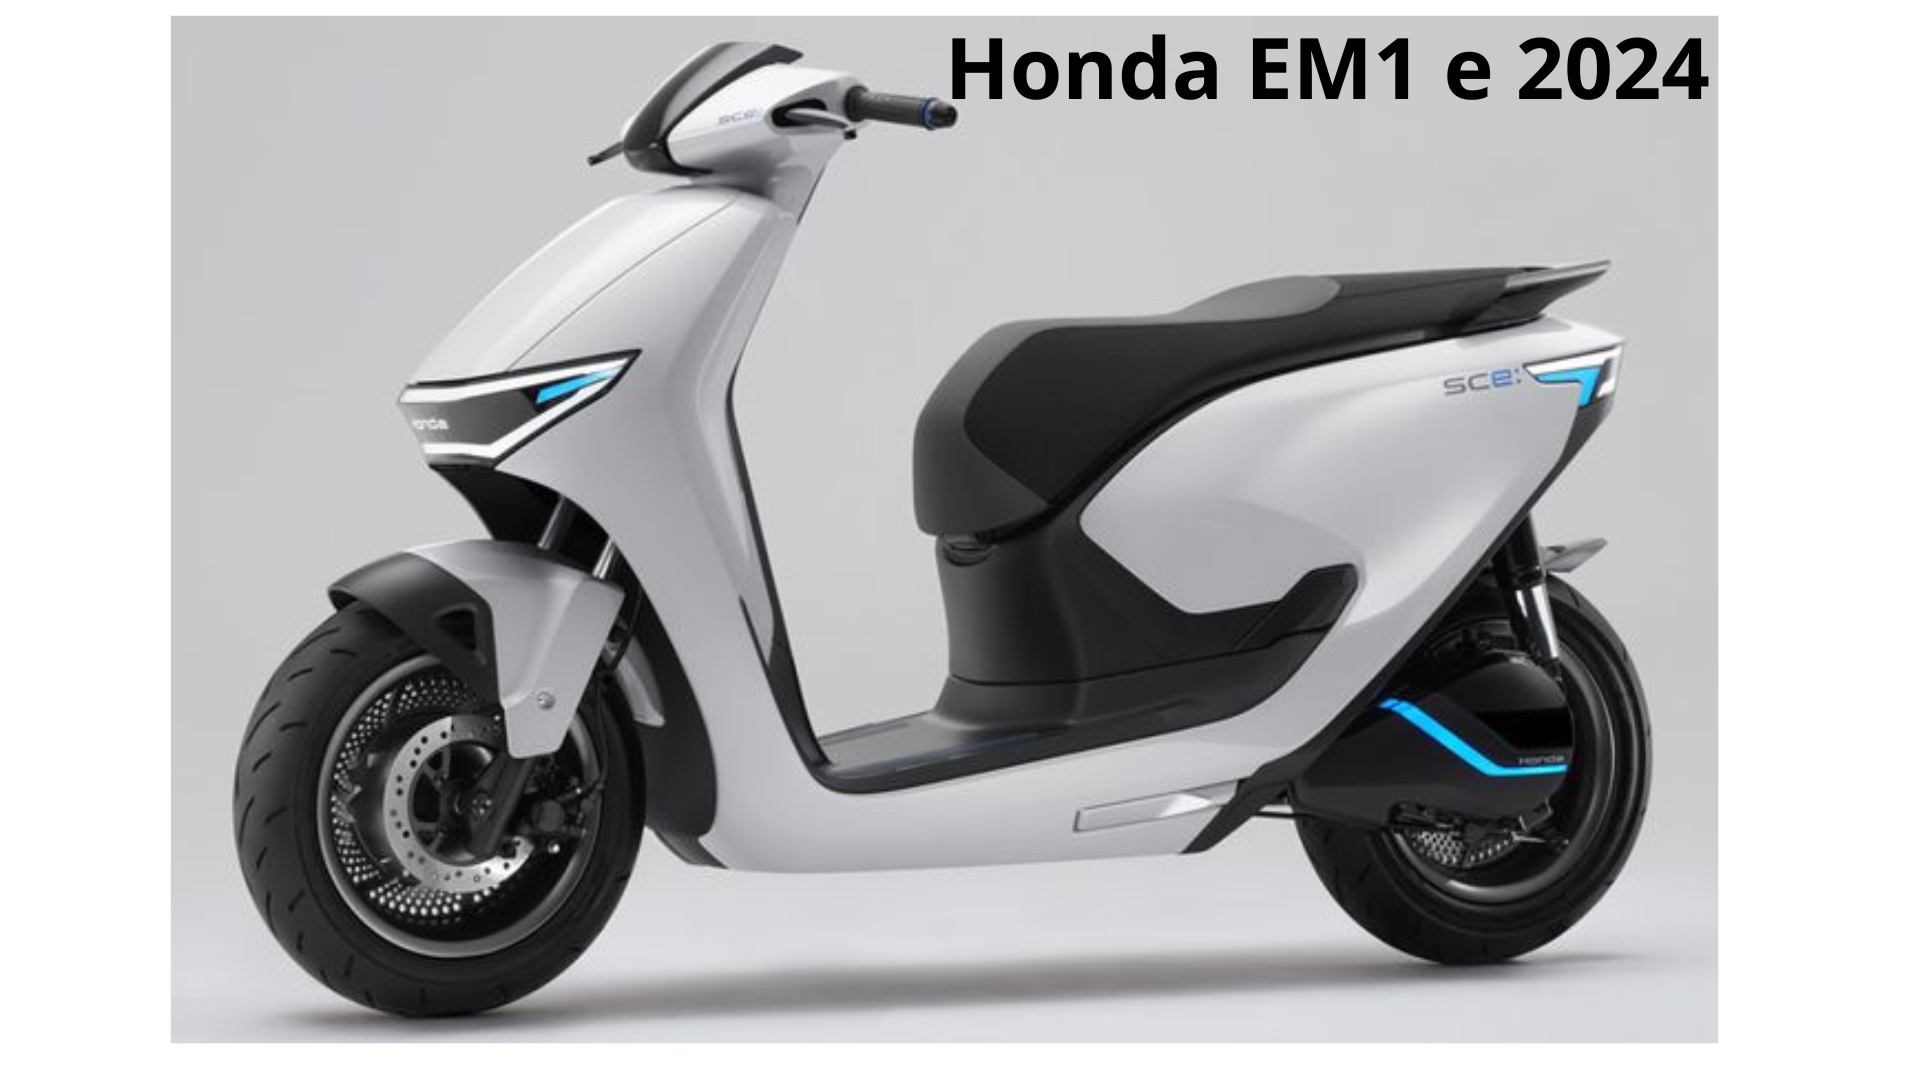 Melangkah Masa Depan Honda EM1 e 2024, Motor Listrik Inovatif dengan Fitur Canggih Terbarunya